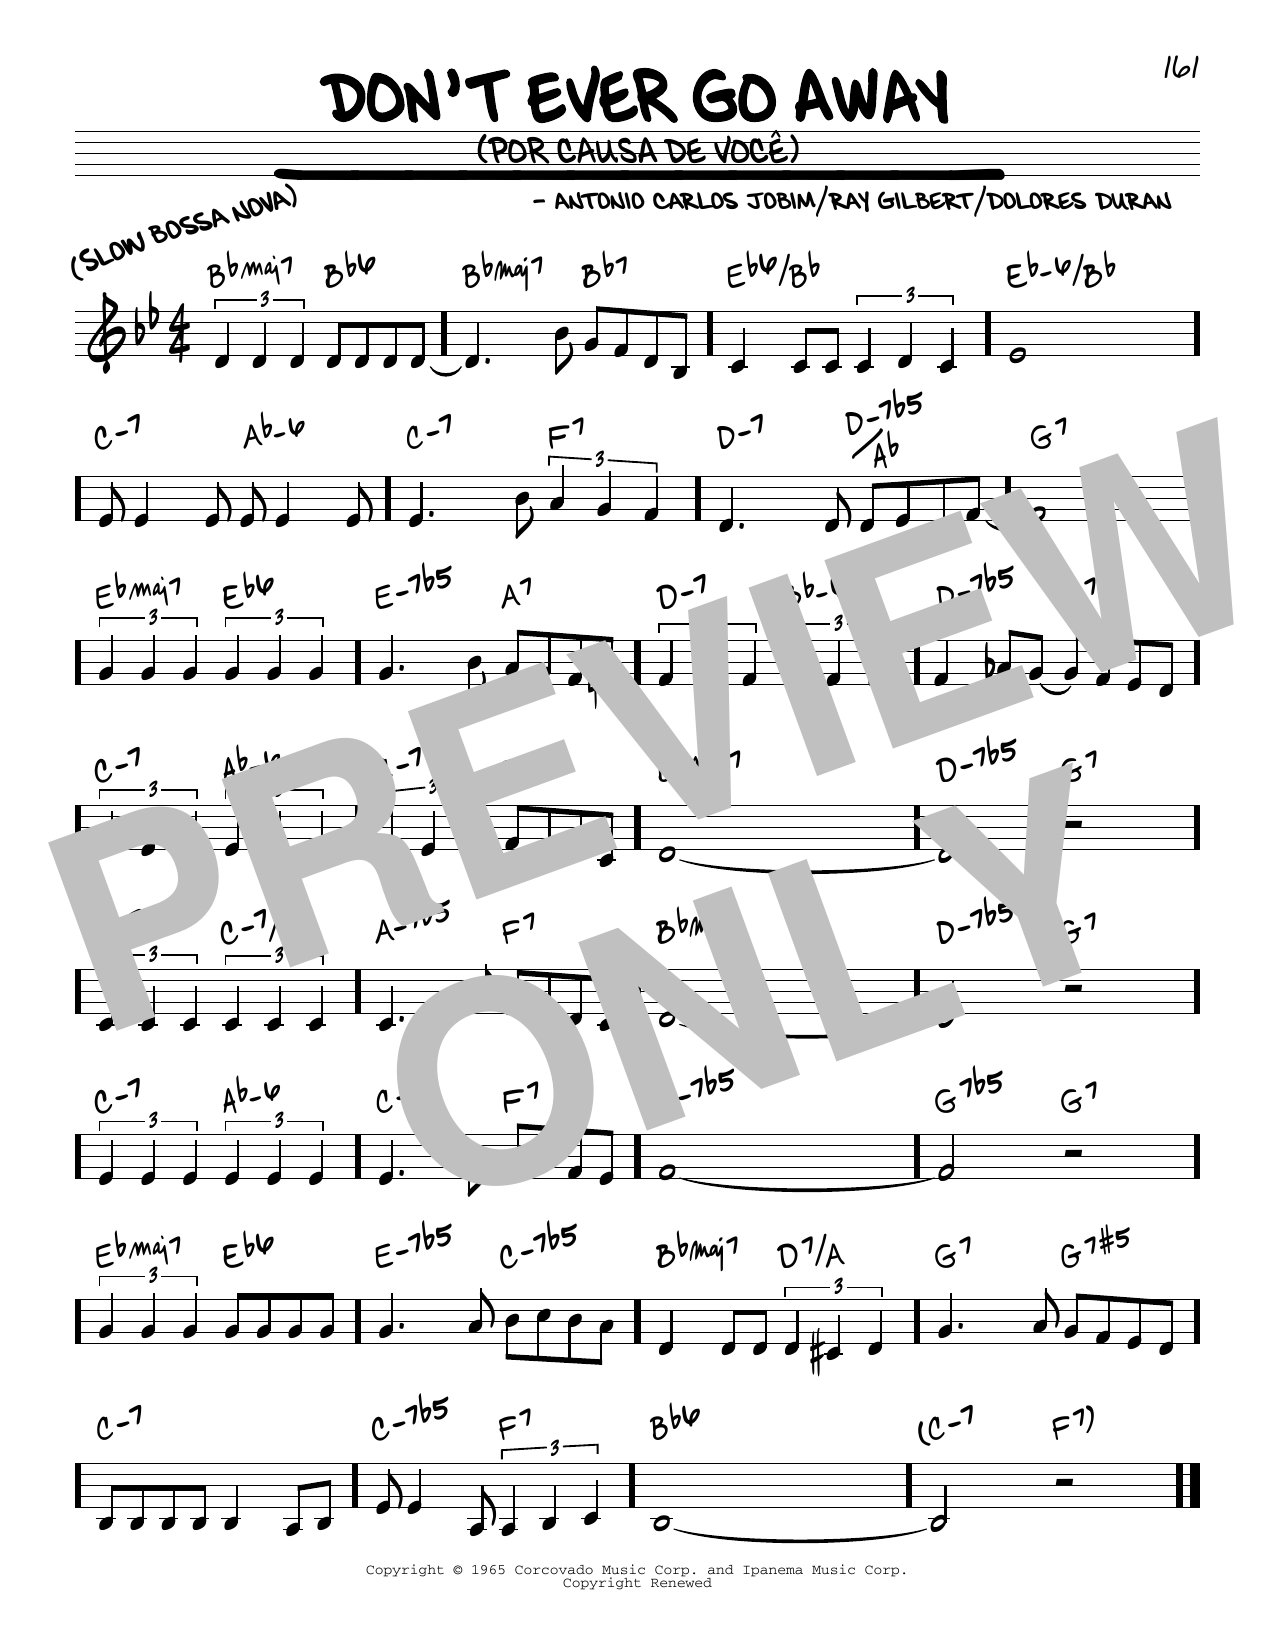 Antonio Carlos Jobim Don't Ever Go Away (Por Causa De Voce) sheet music notes and chords arranged for Lead Sheet / Fake Book